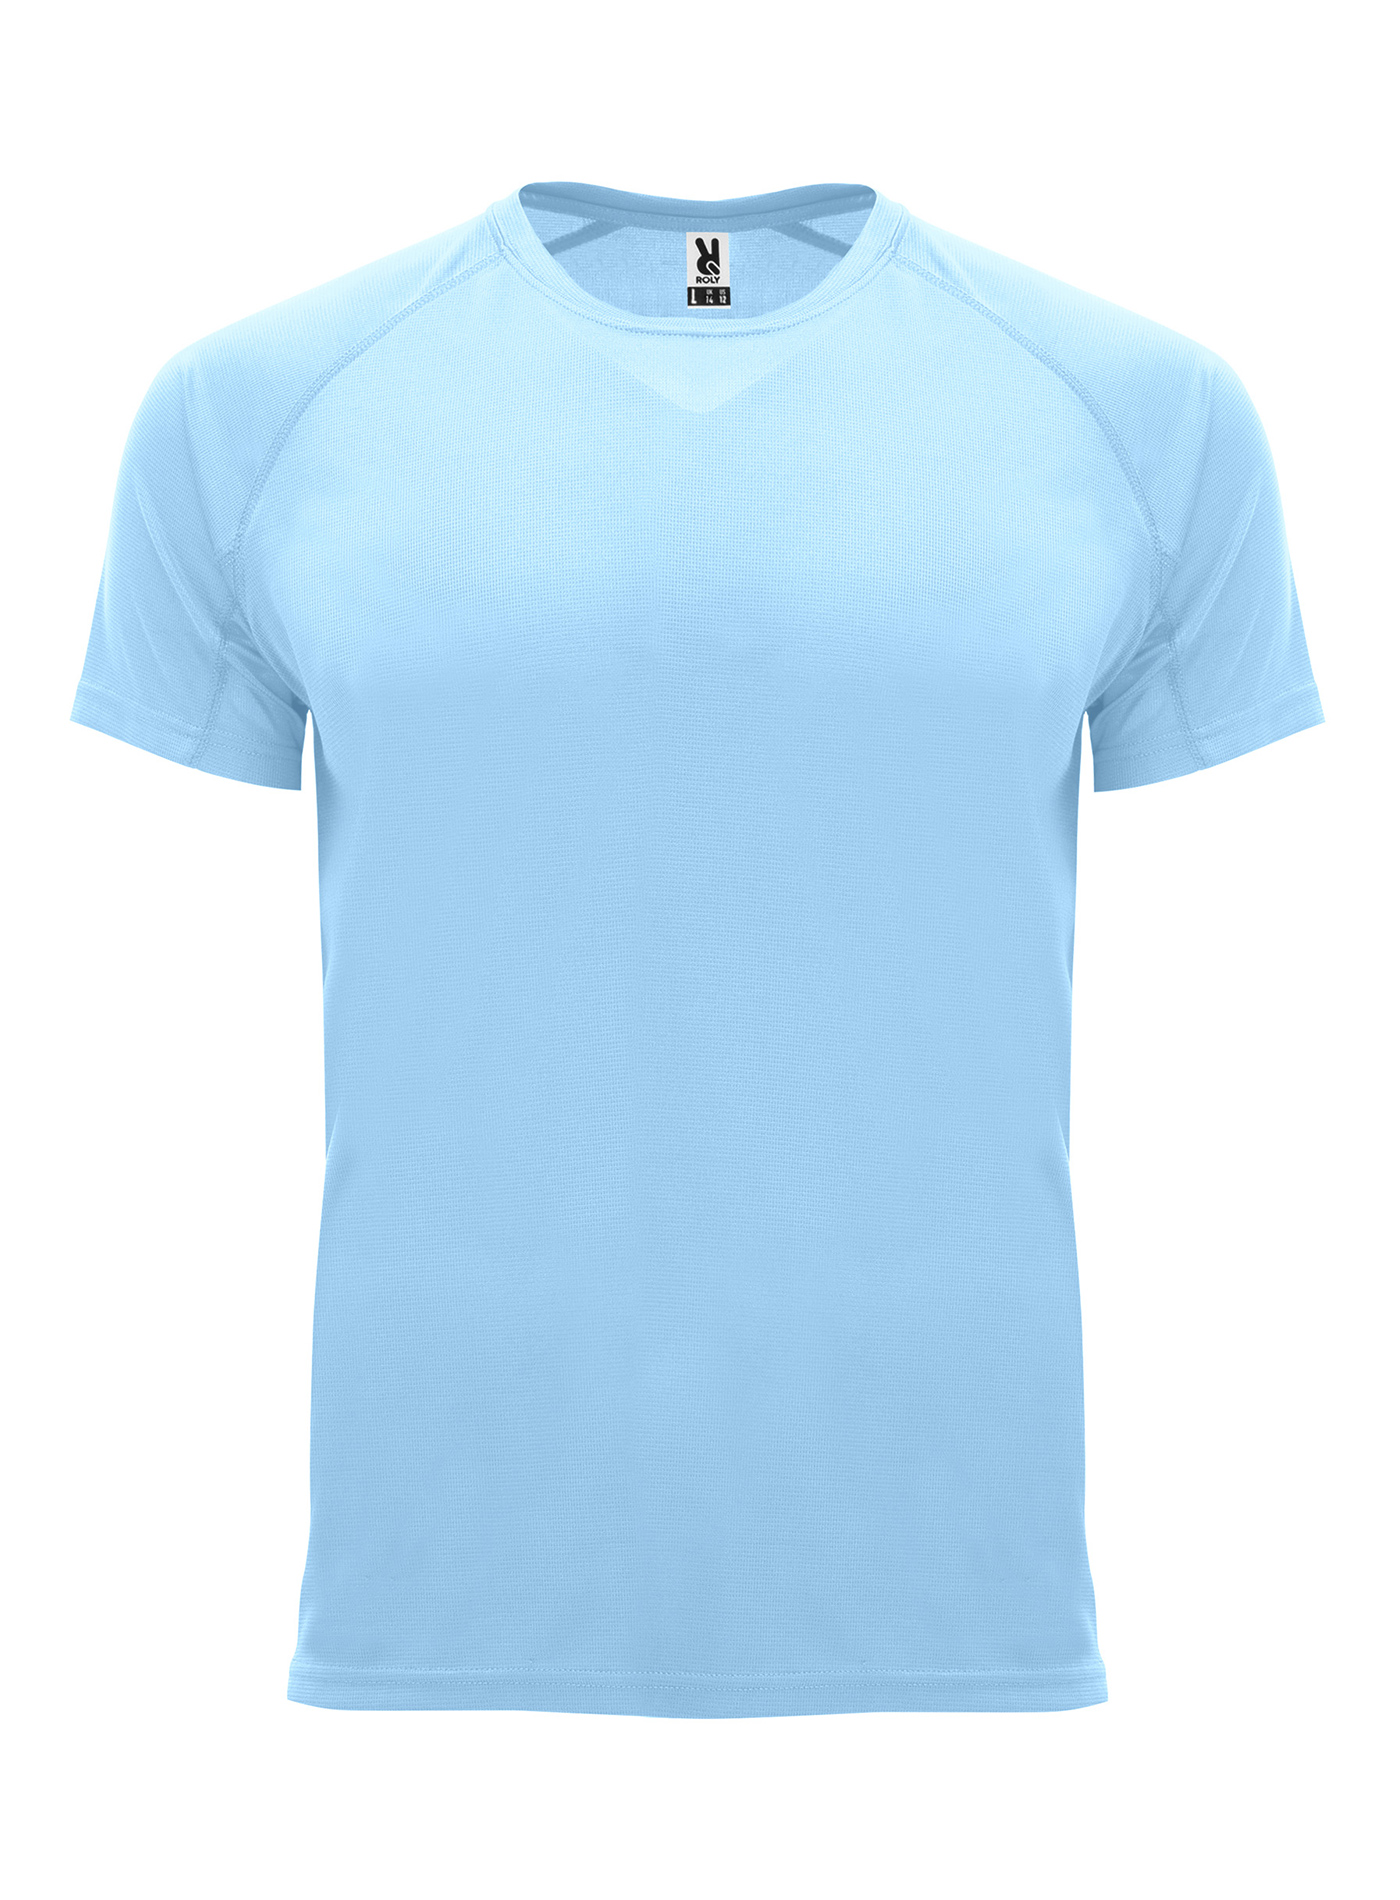 Pánské sportovní tričko Roly Bahrain - Blankytně modrá XXL